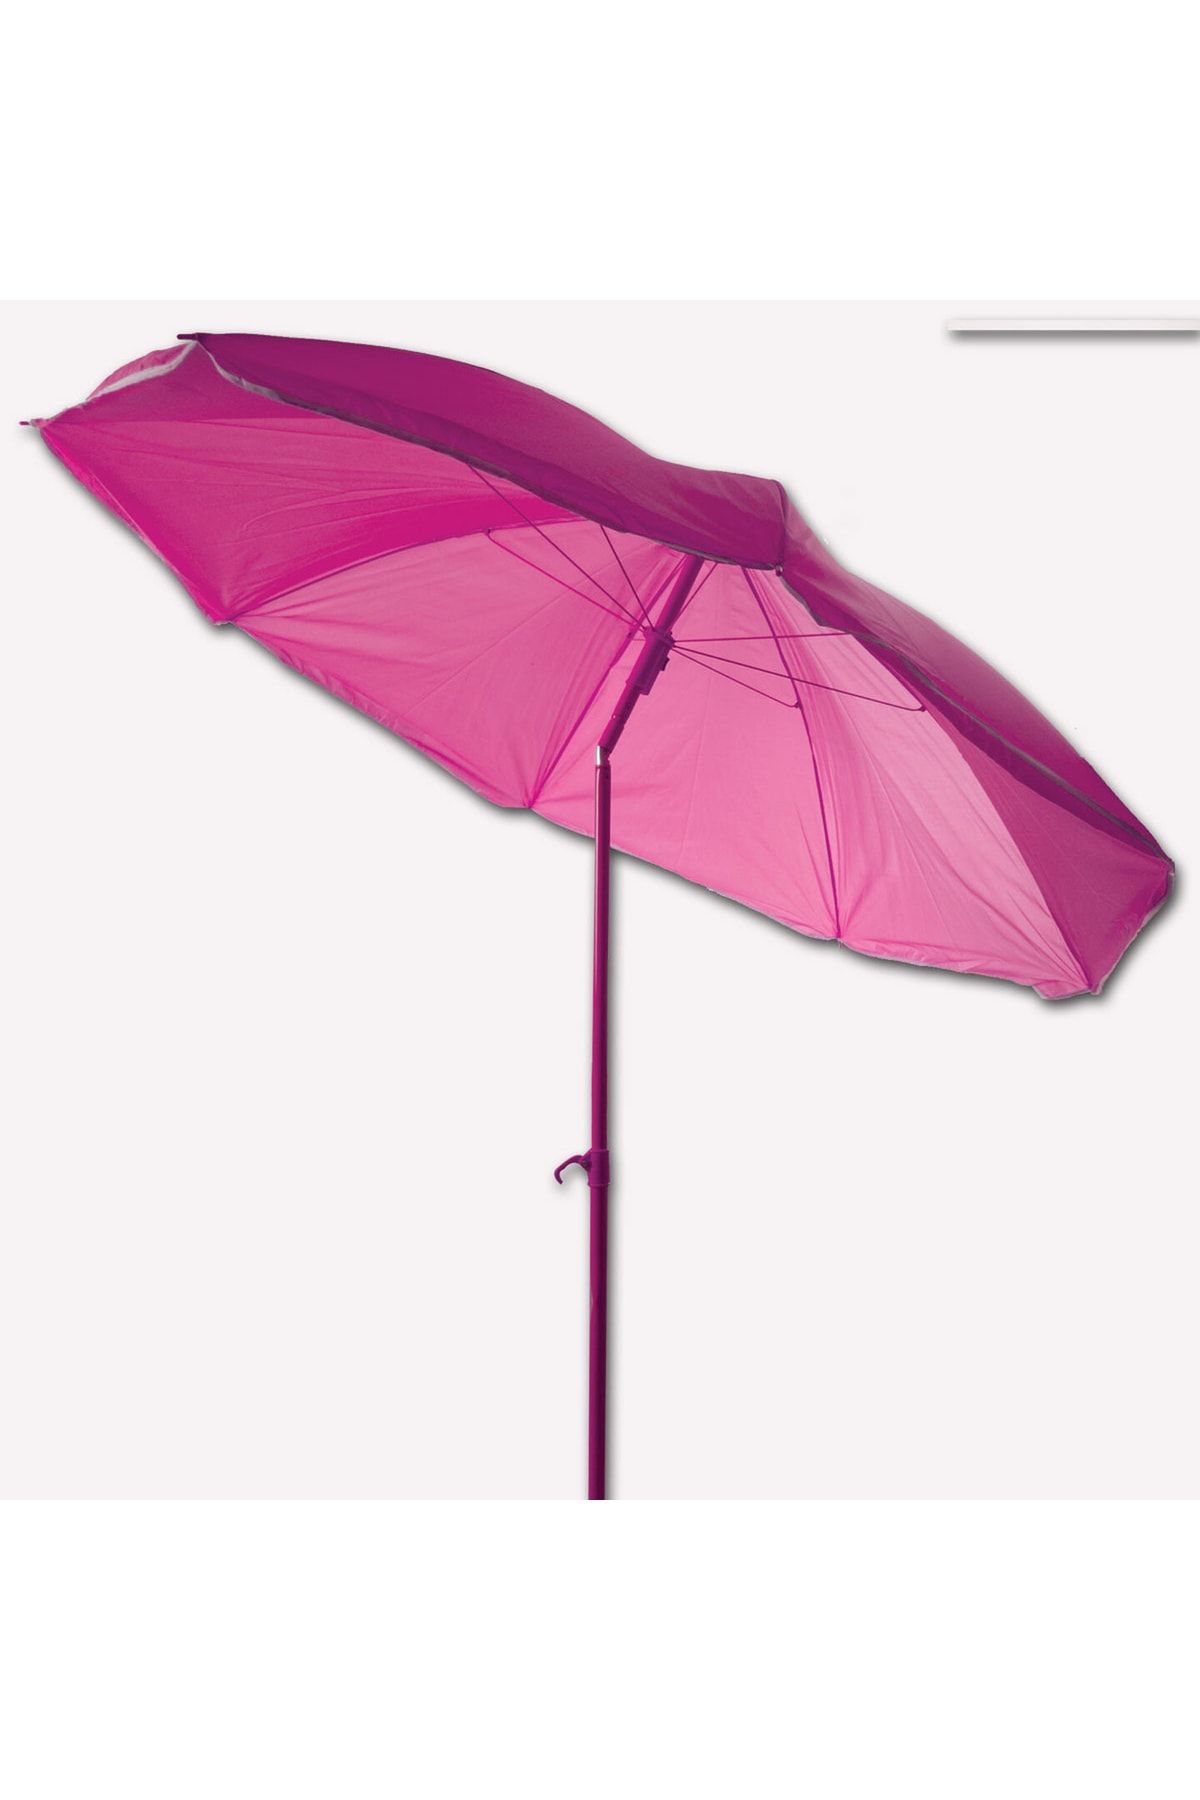 Genel Markalar Sunfun Şemsiye 180cm Güneşten Korunma Balkon Ve Bahçe Için